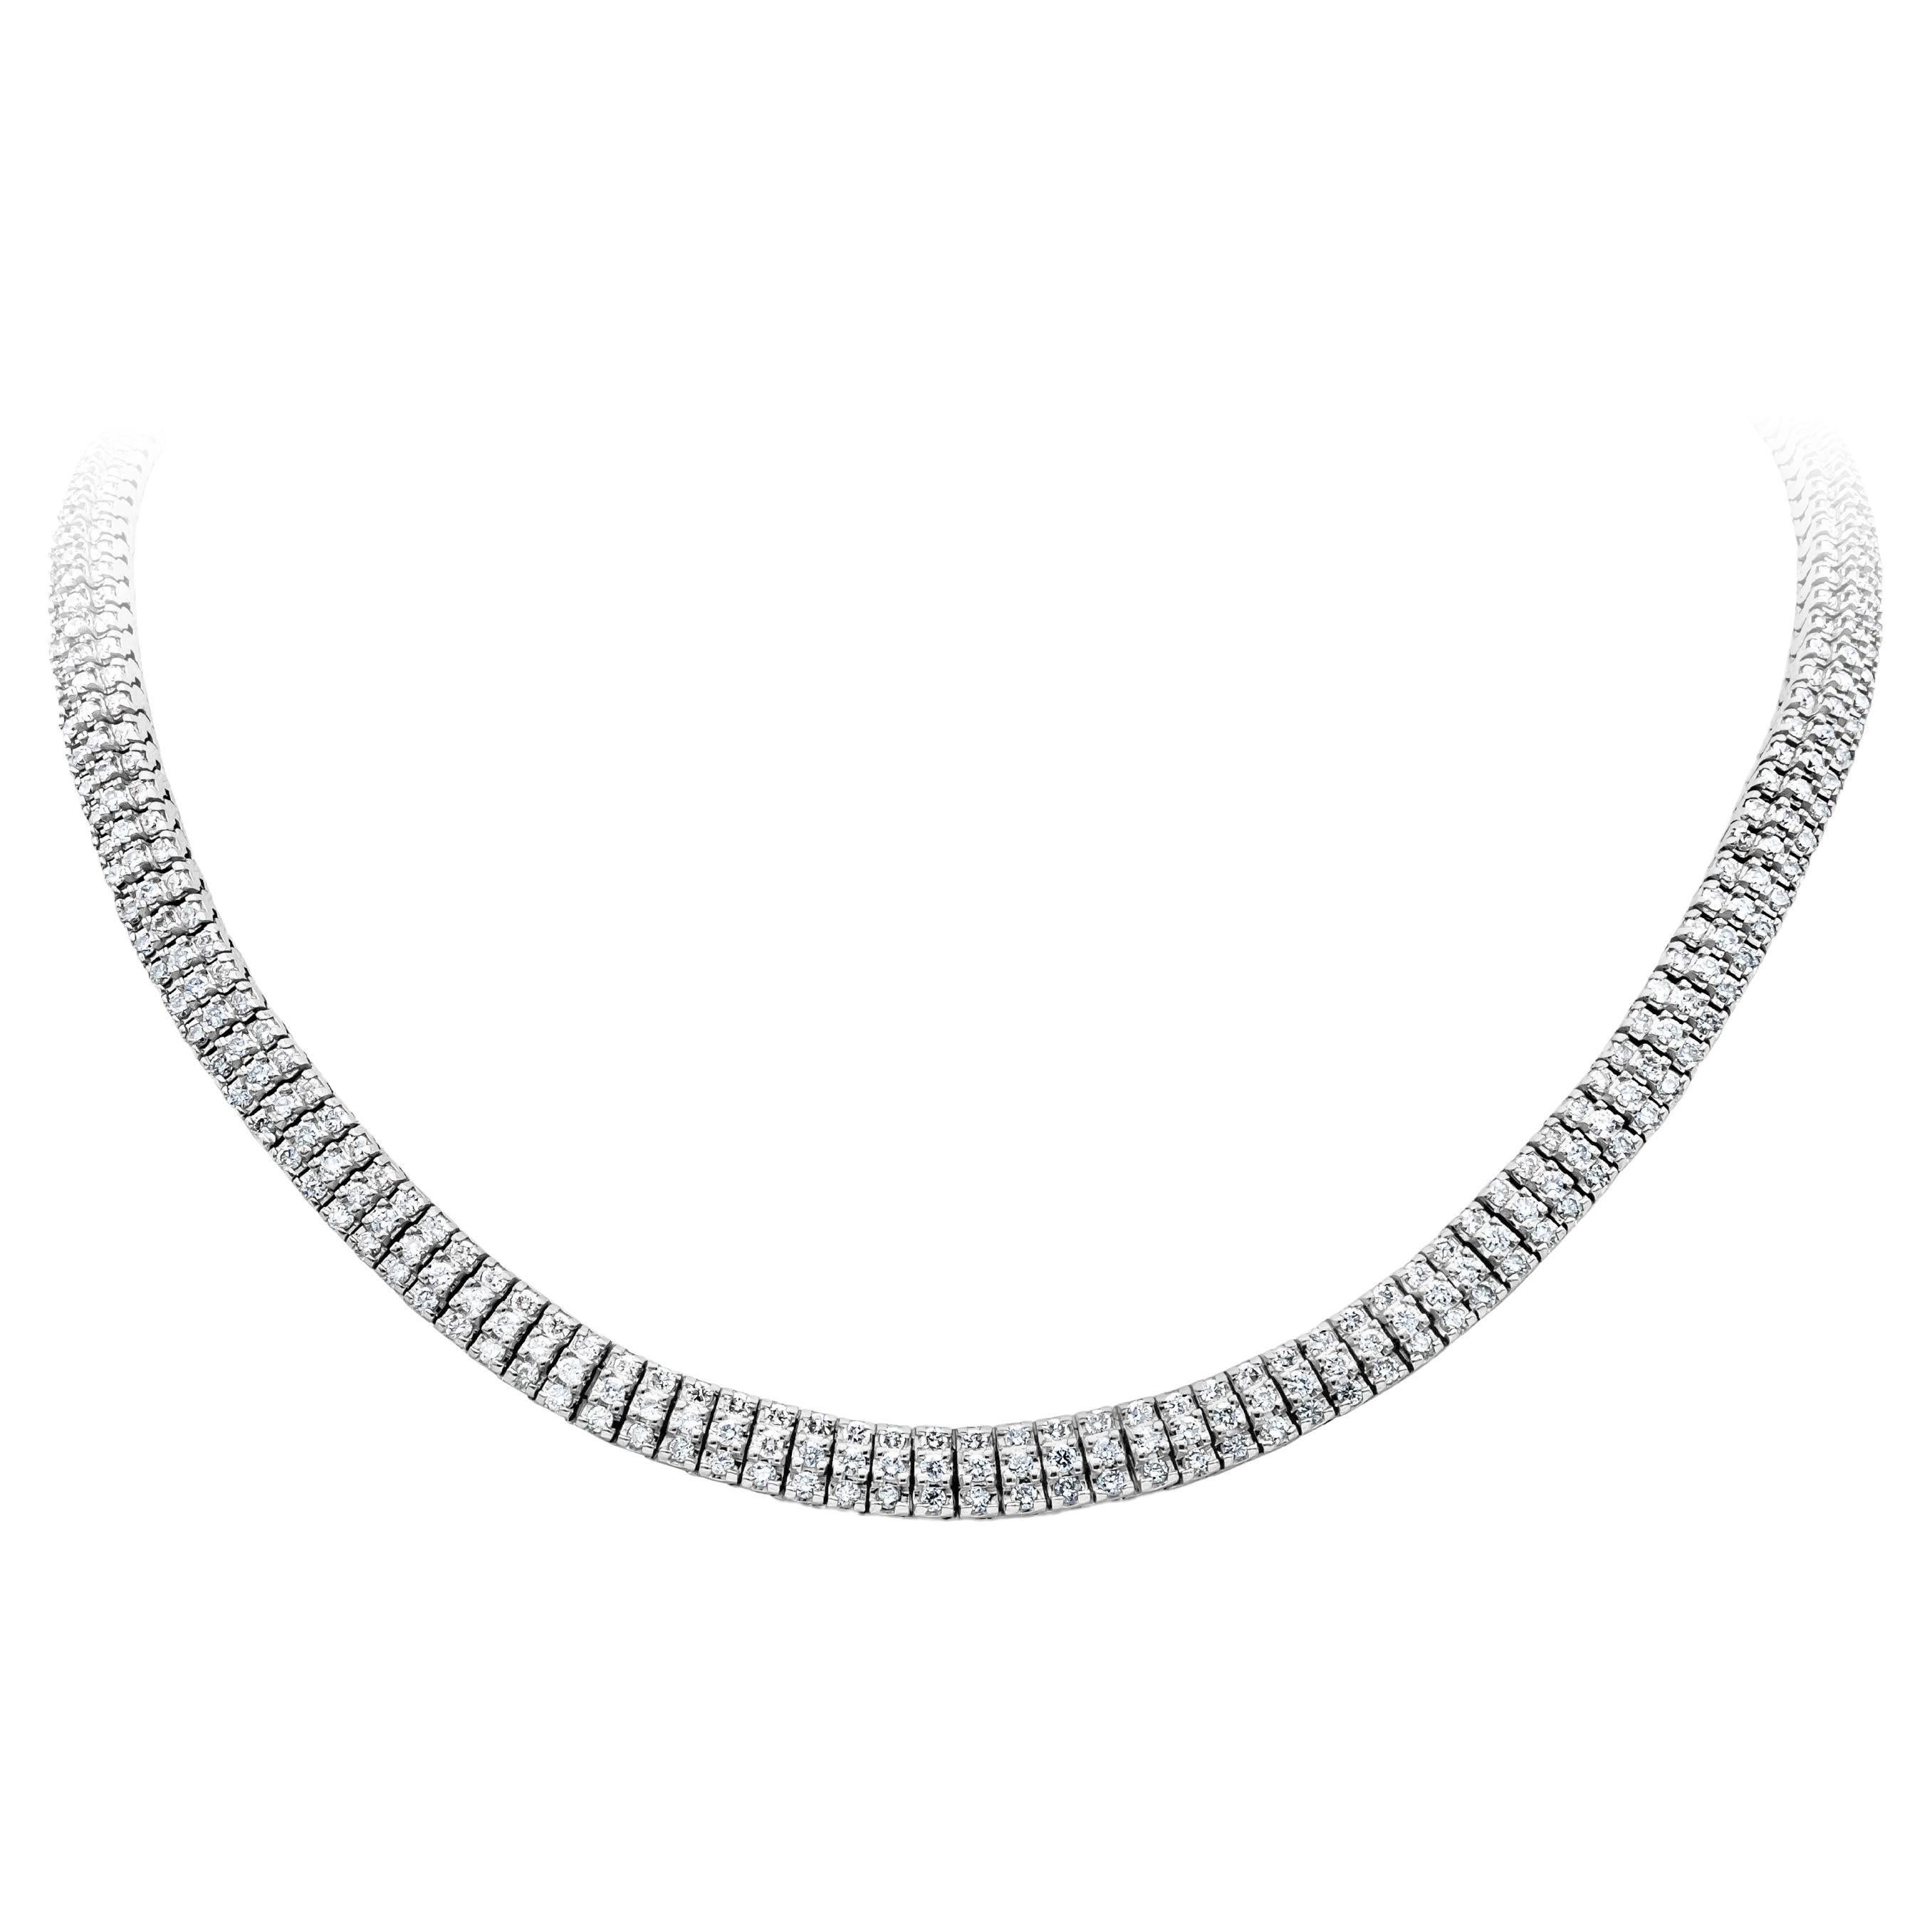 10.02 Carat Three Row Diamond Necklace 